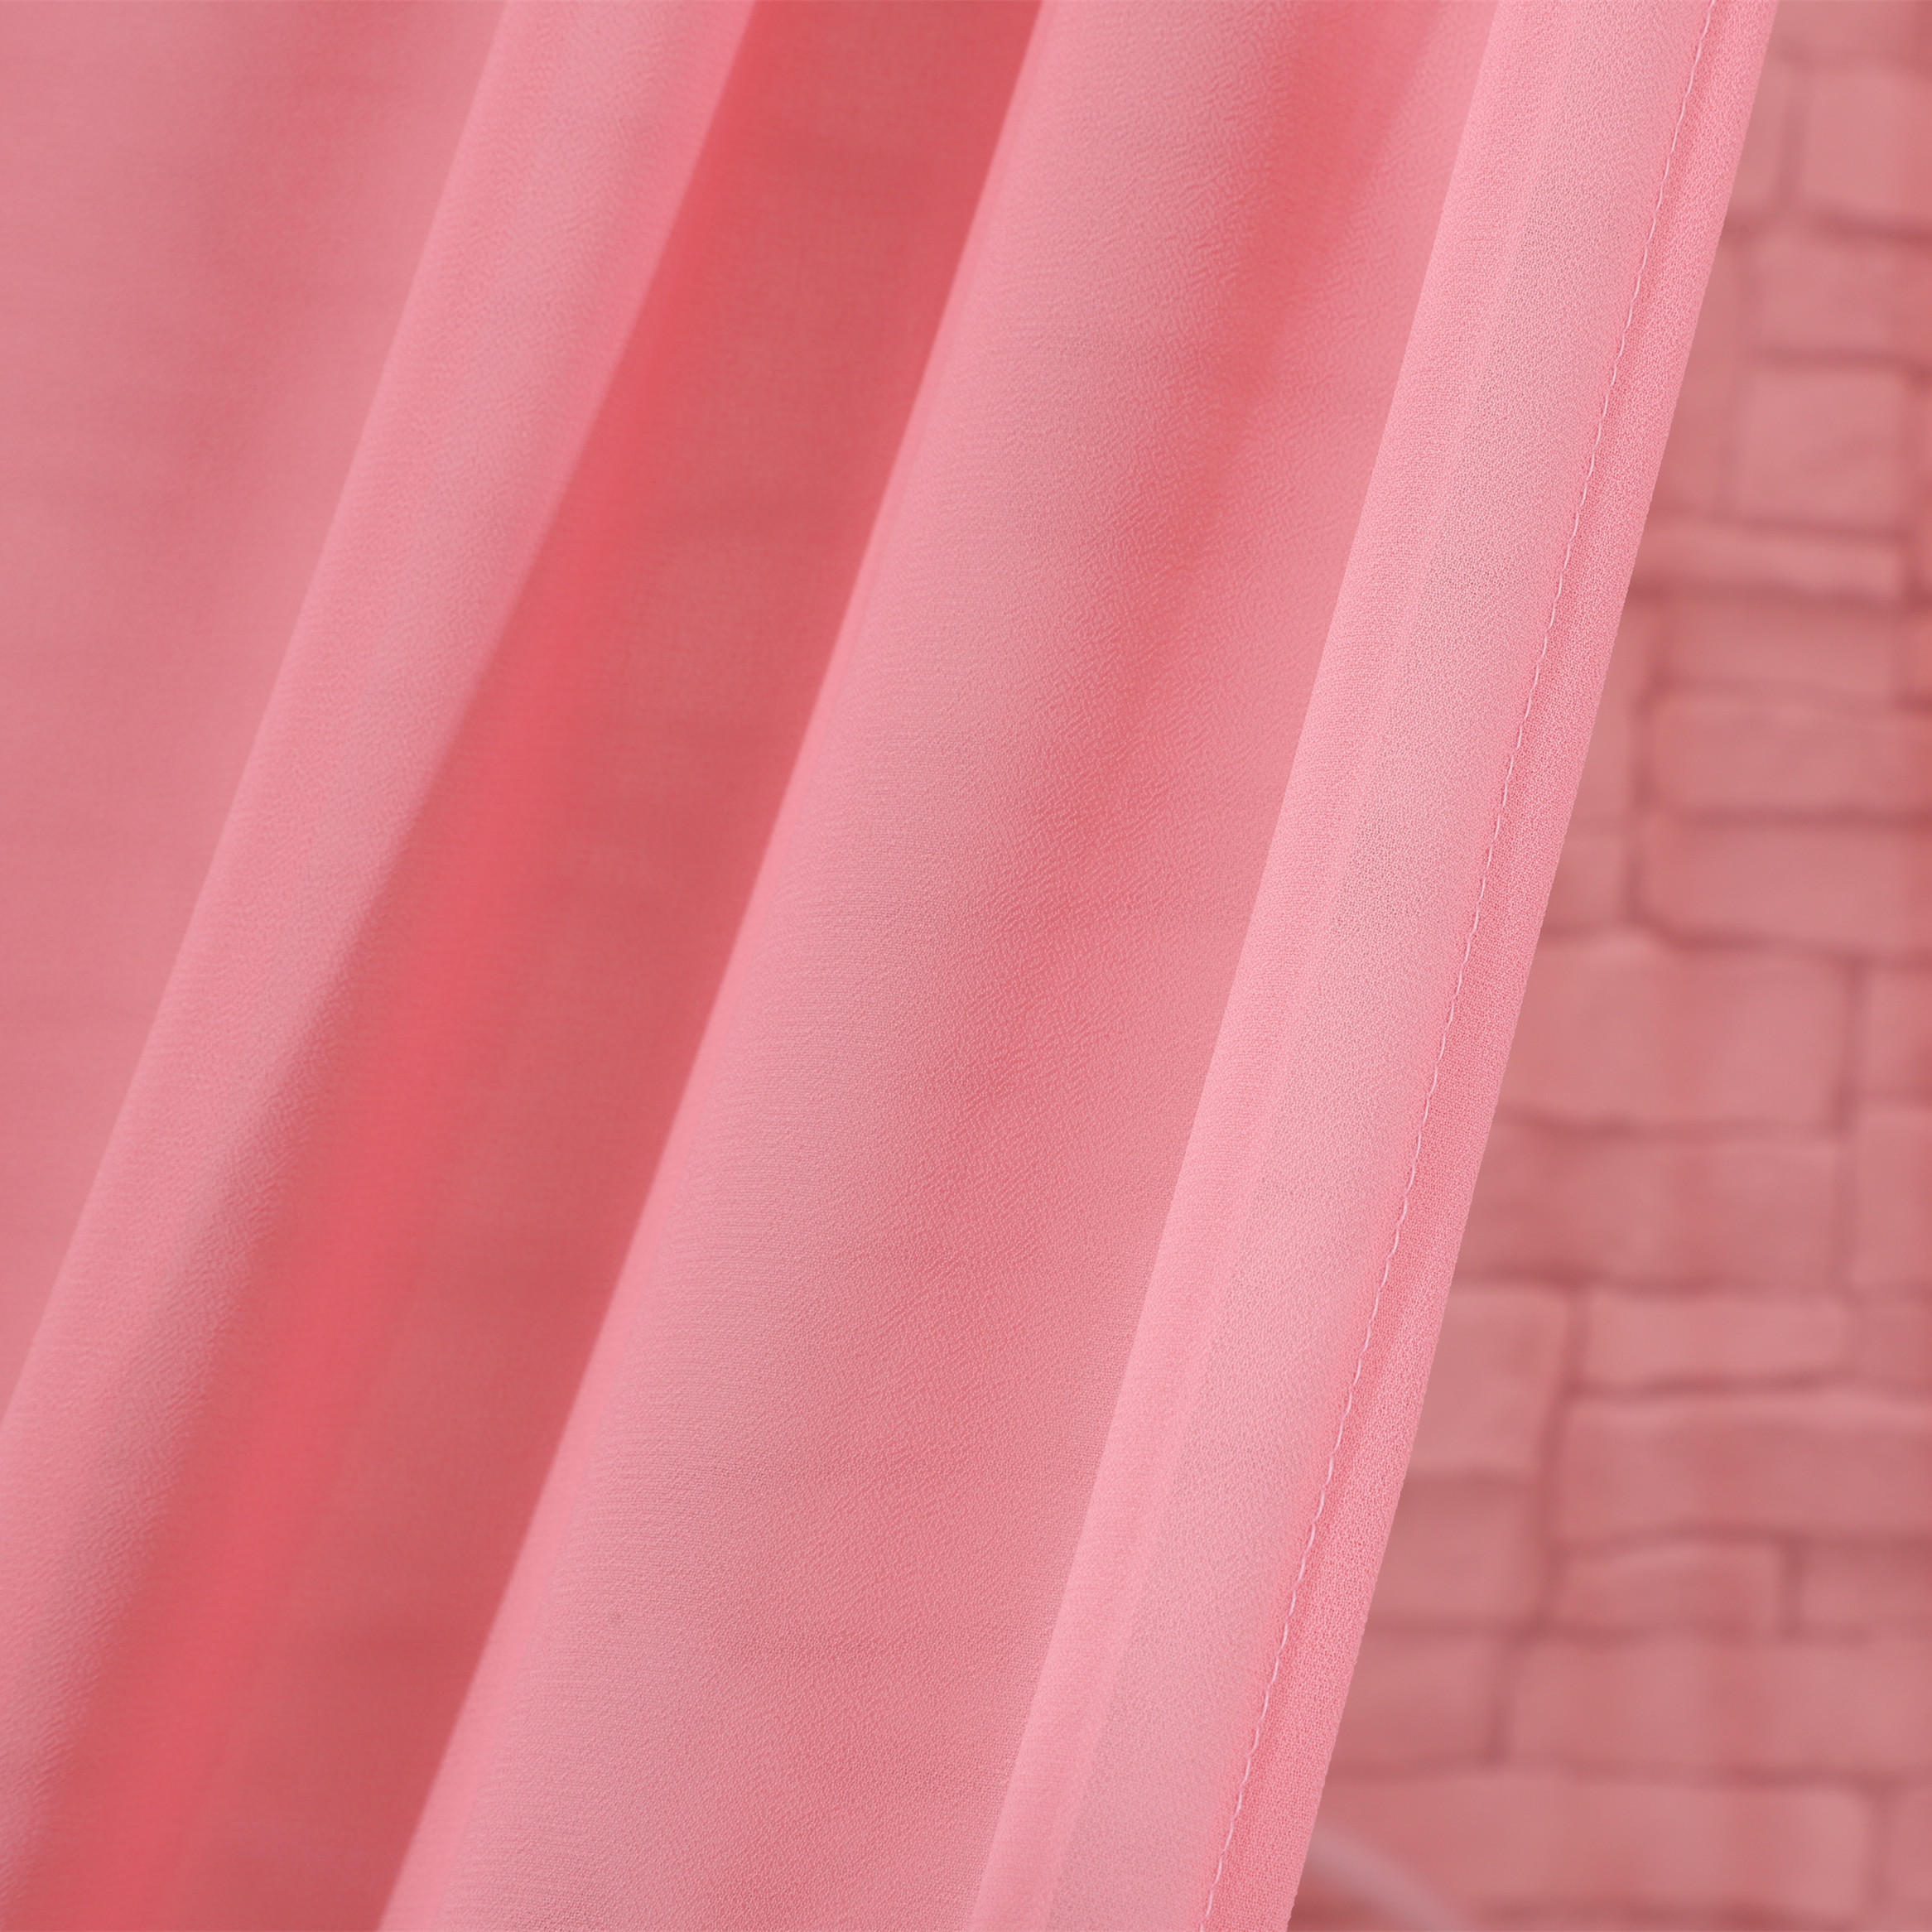 Bequeme rosafarbene Prinzessin-Blumen-Dekor-Kind-Spiel-Spielzeug-Zelt-hängende Bett-Überdachungen für Mädchen